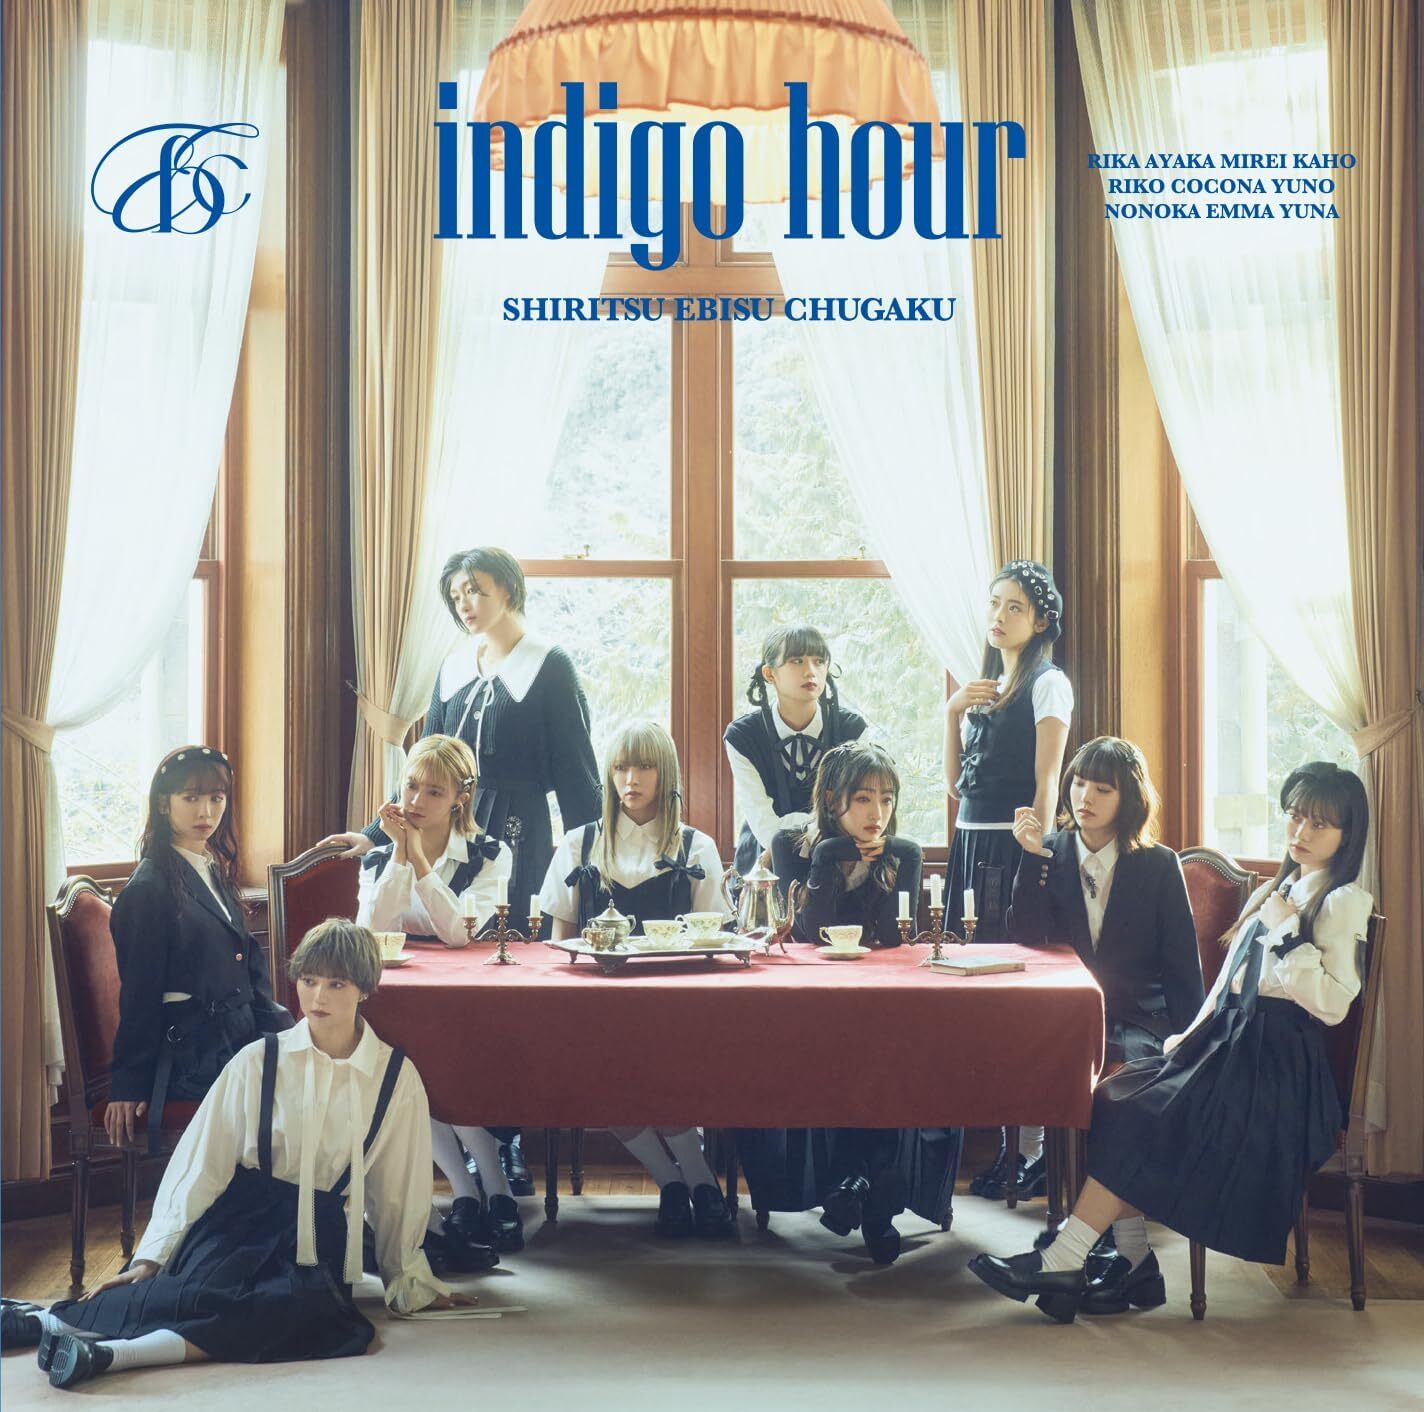 Shiritsu Ebisu Chugaku : Indigo Hour [CD]